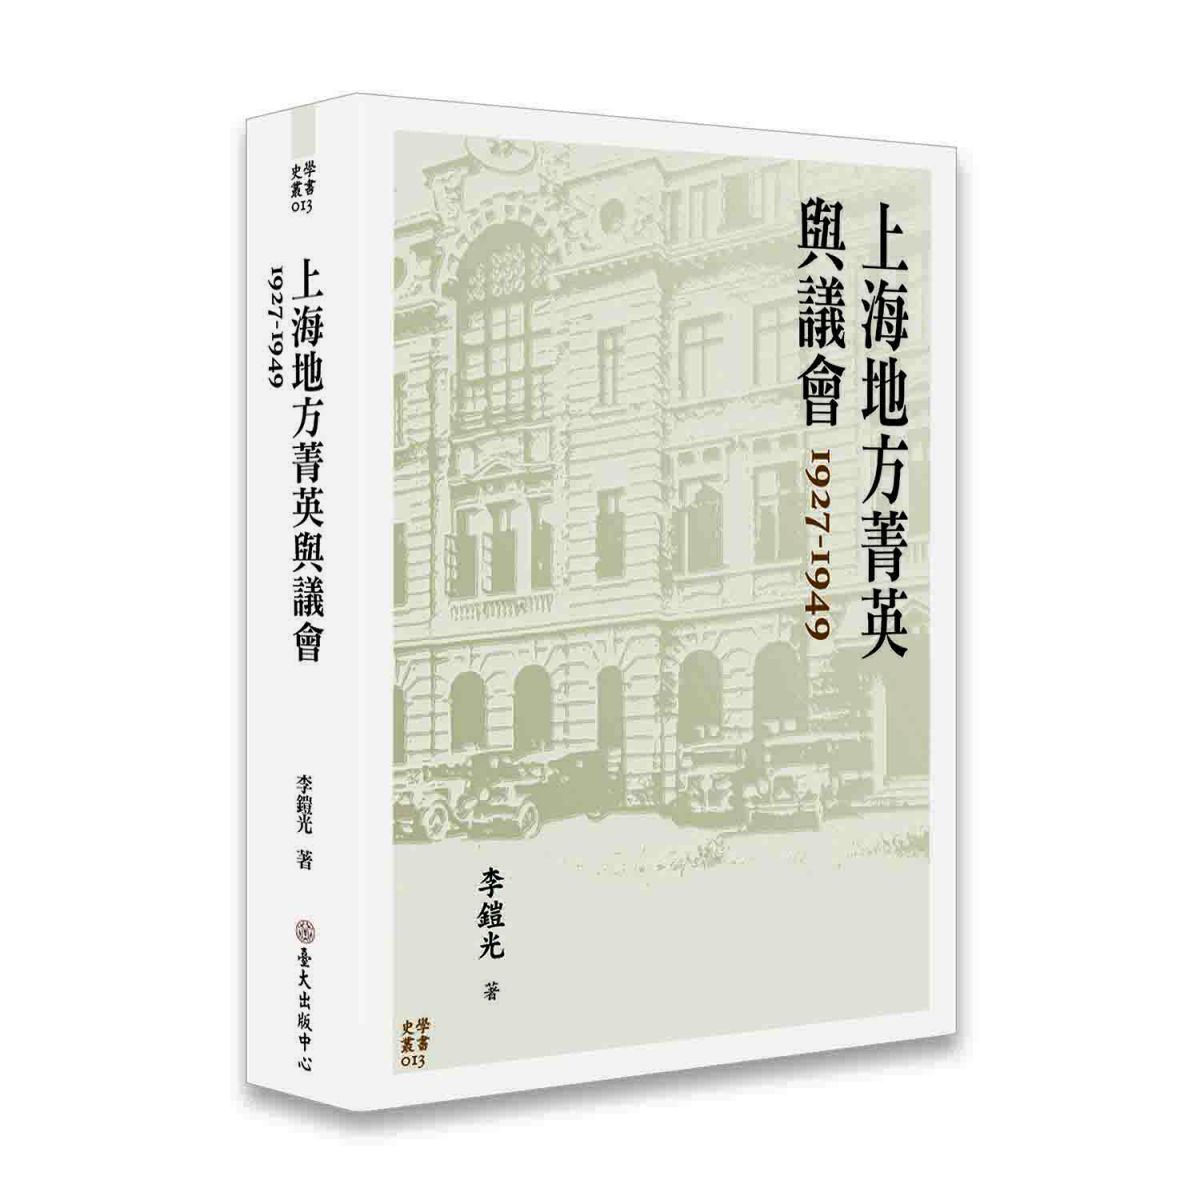 《上海地方菁英與議會 1927-1949》在政治制度的框架中，具體討論當時面臨哪些社會問題之關鍵